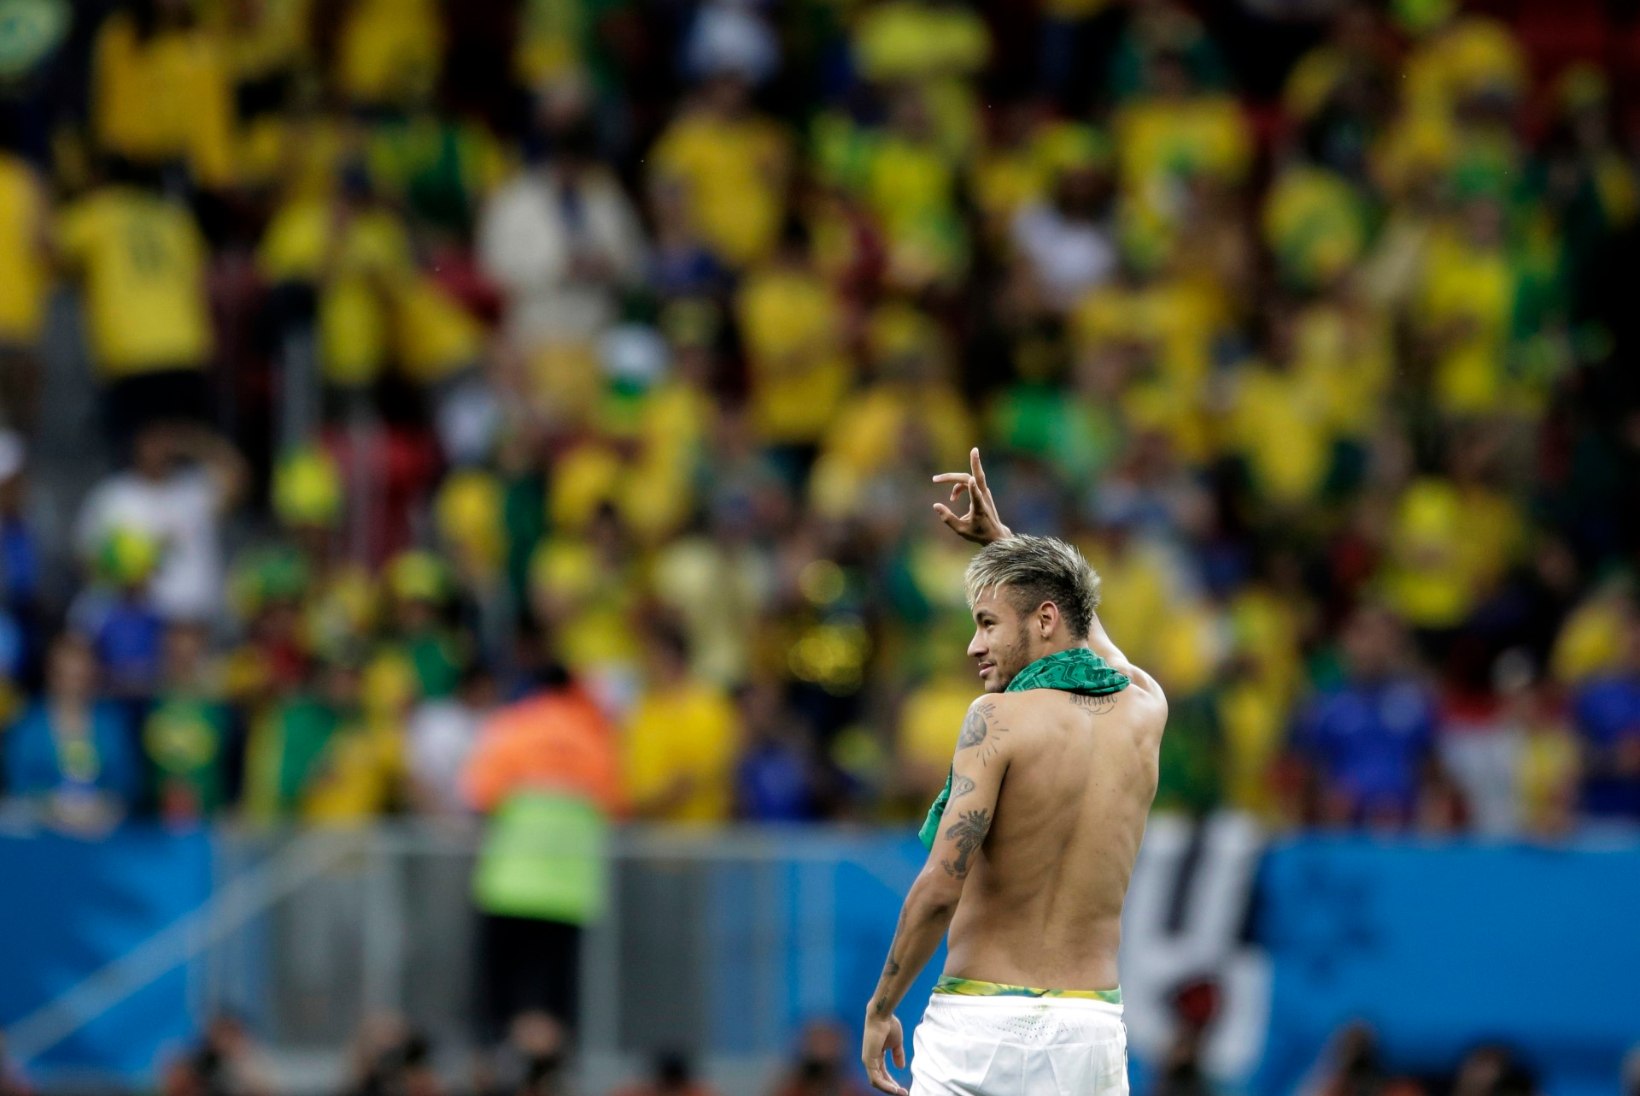 GALERII: Neymar ja Brasiilia andsid Kamerunile õppetunni